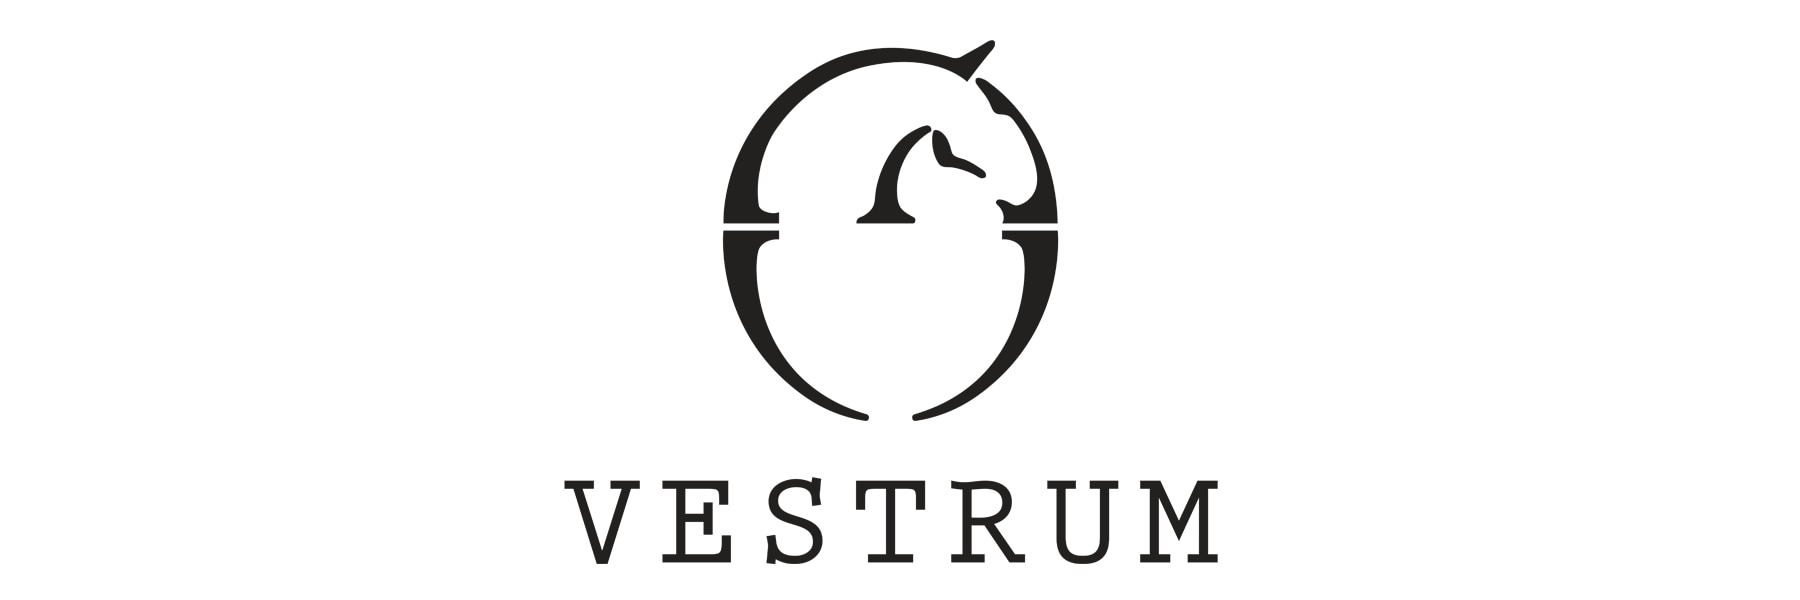 Vestrum's amazing things - Online - Hogstaonline - Hogsta Ridsport